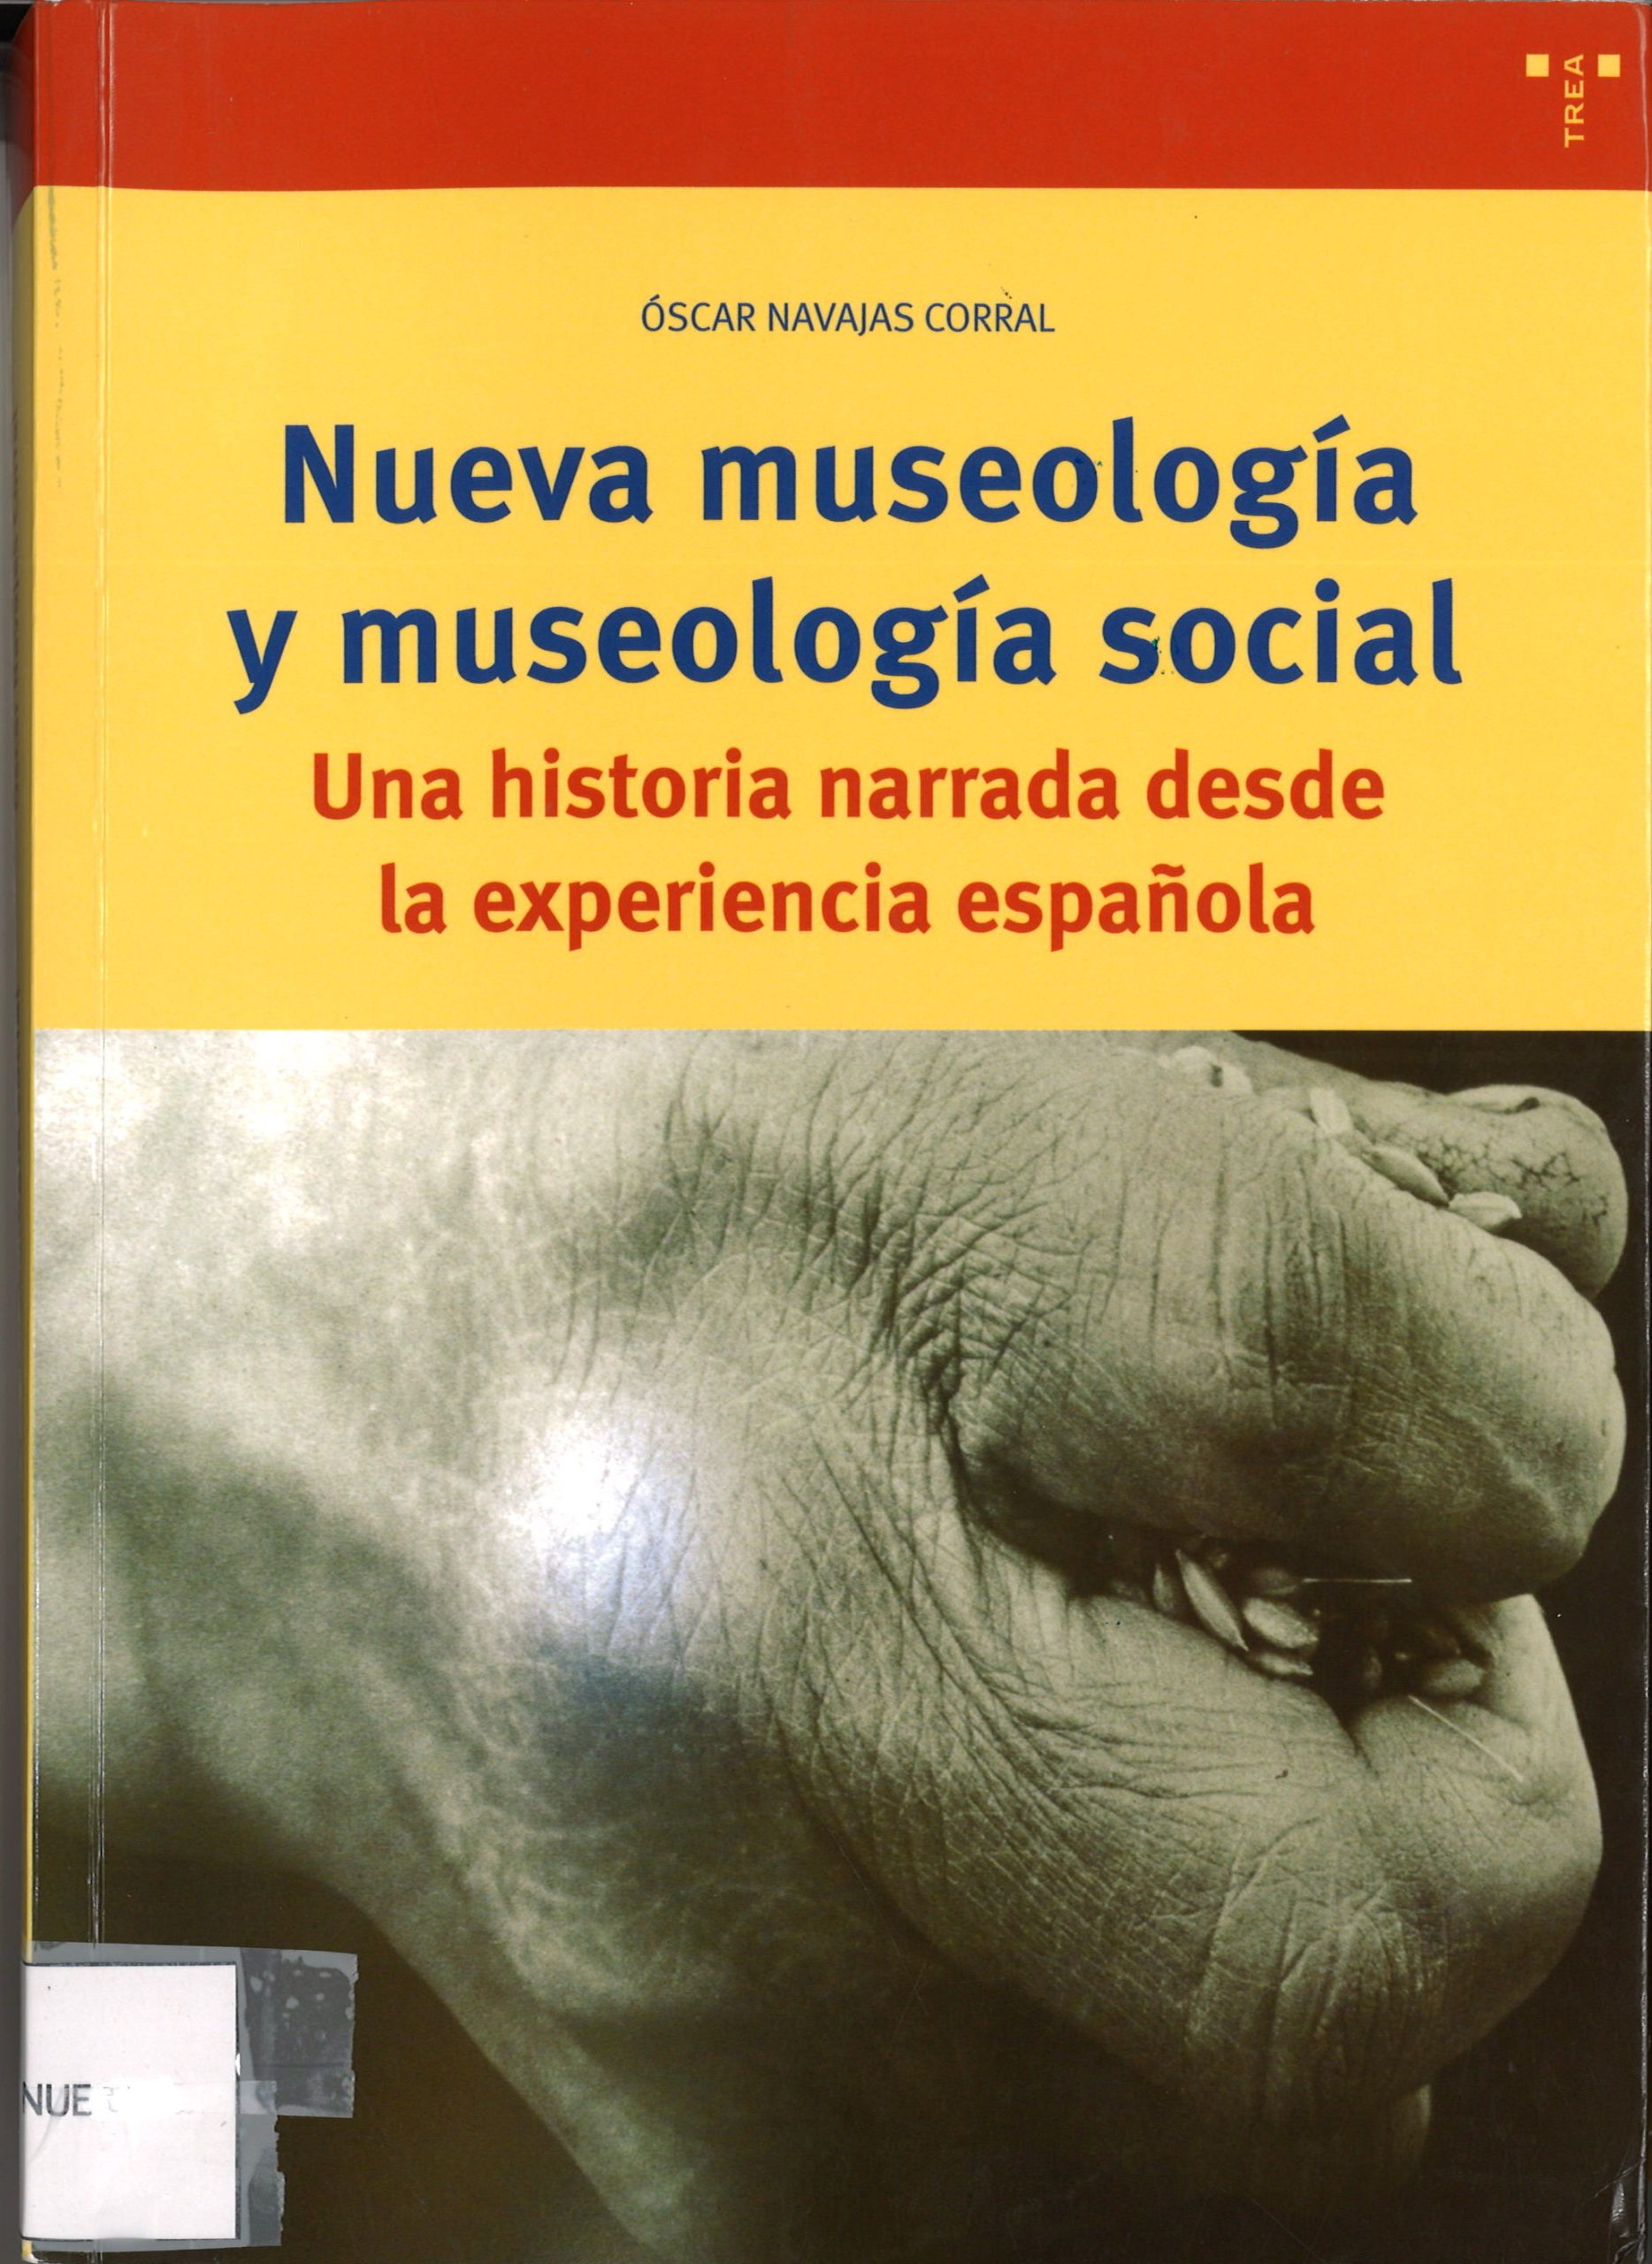 Nueva museología y museología social. Una historia narrada desde la experiencia española-Óscar Navajas Corral-image